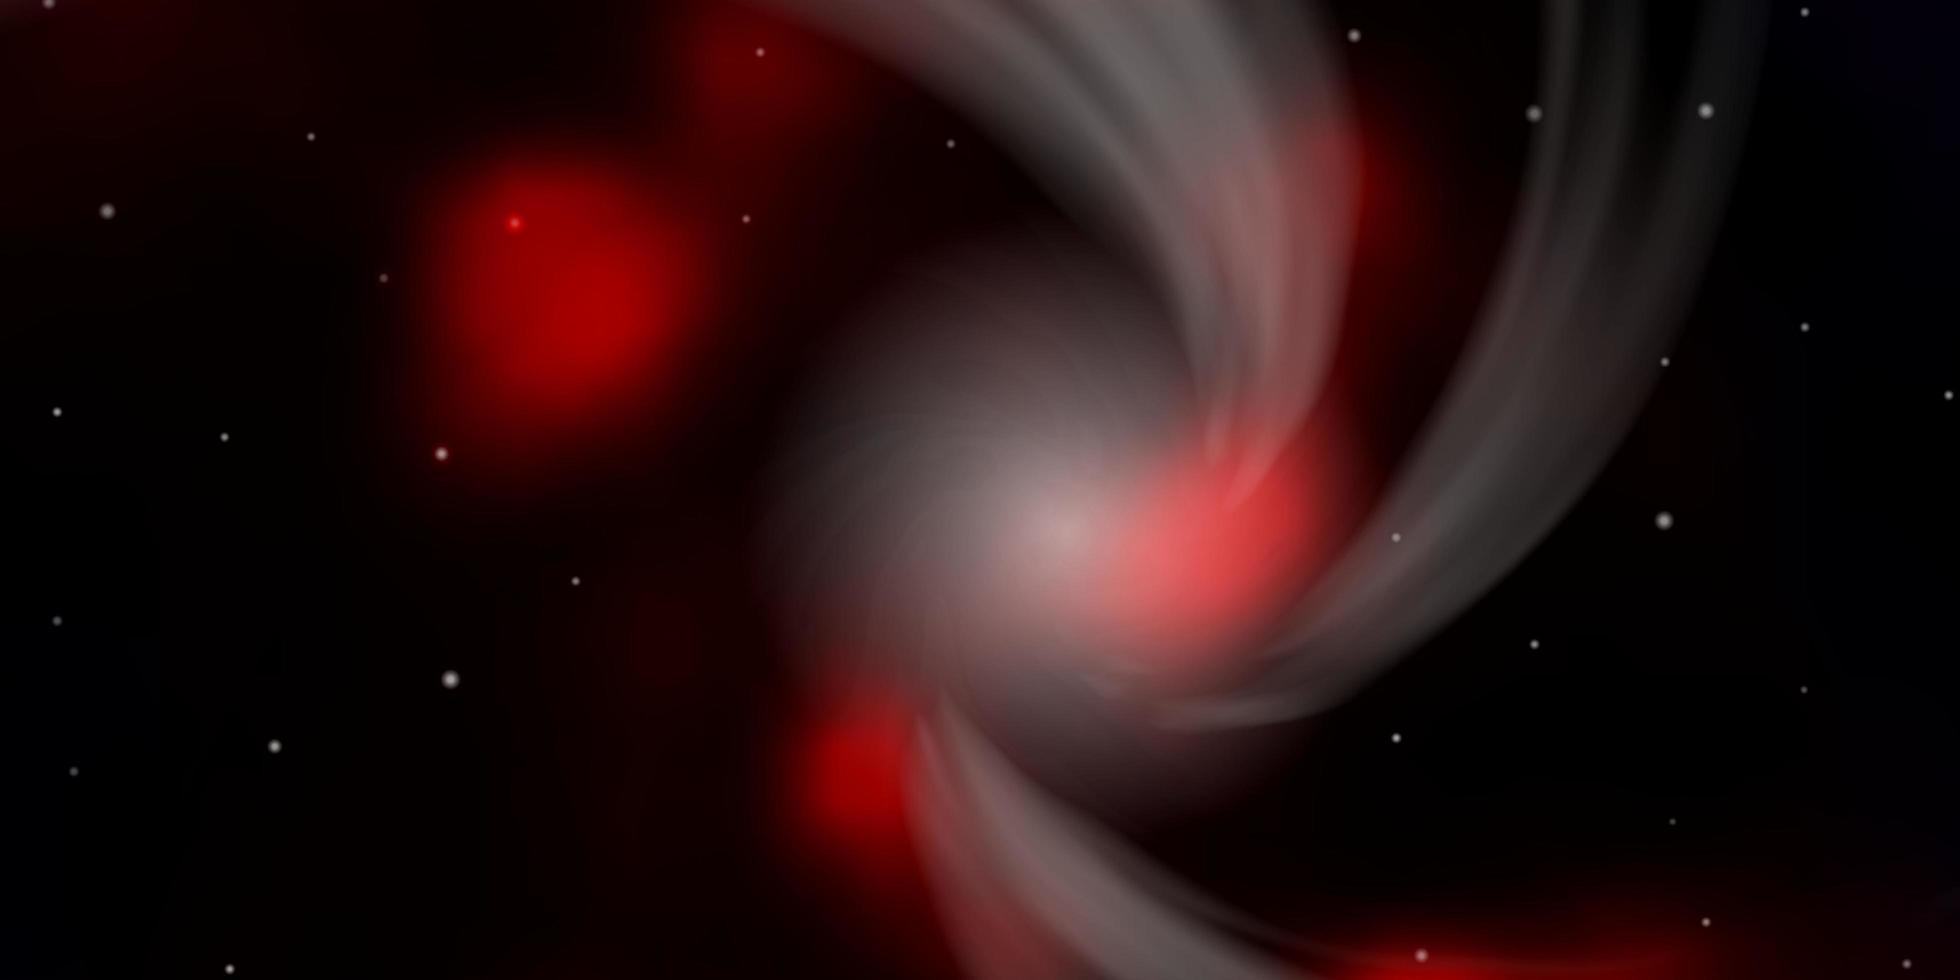 modelo de vetor vermelho escuro com estrelas de néon.